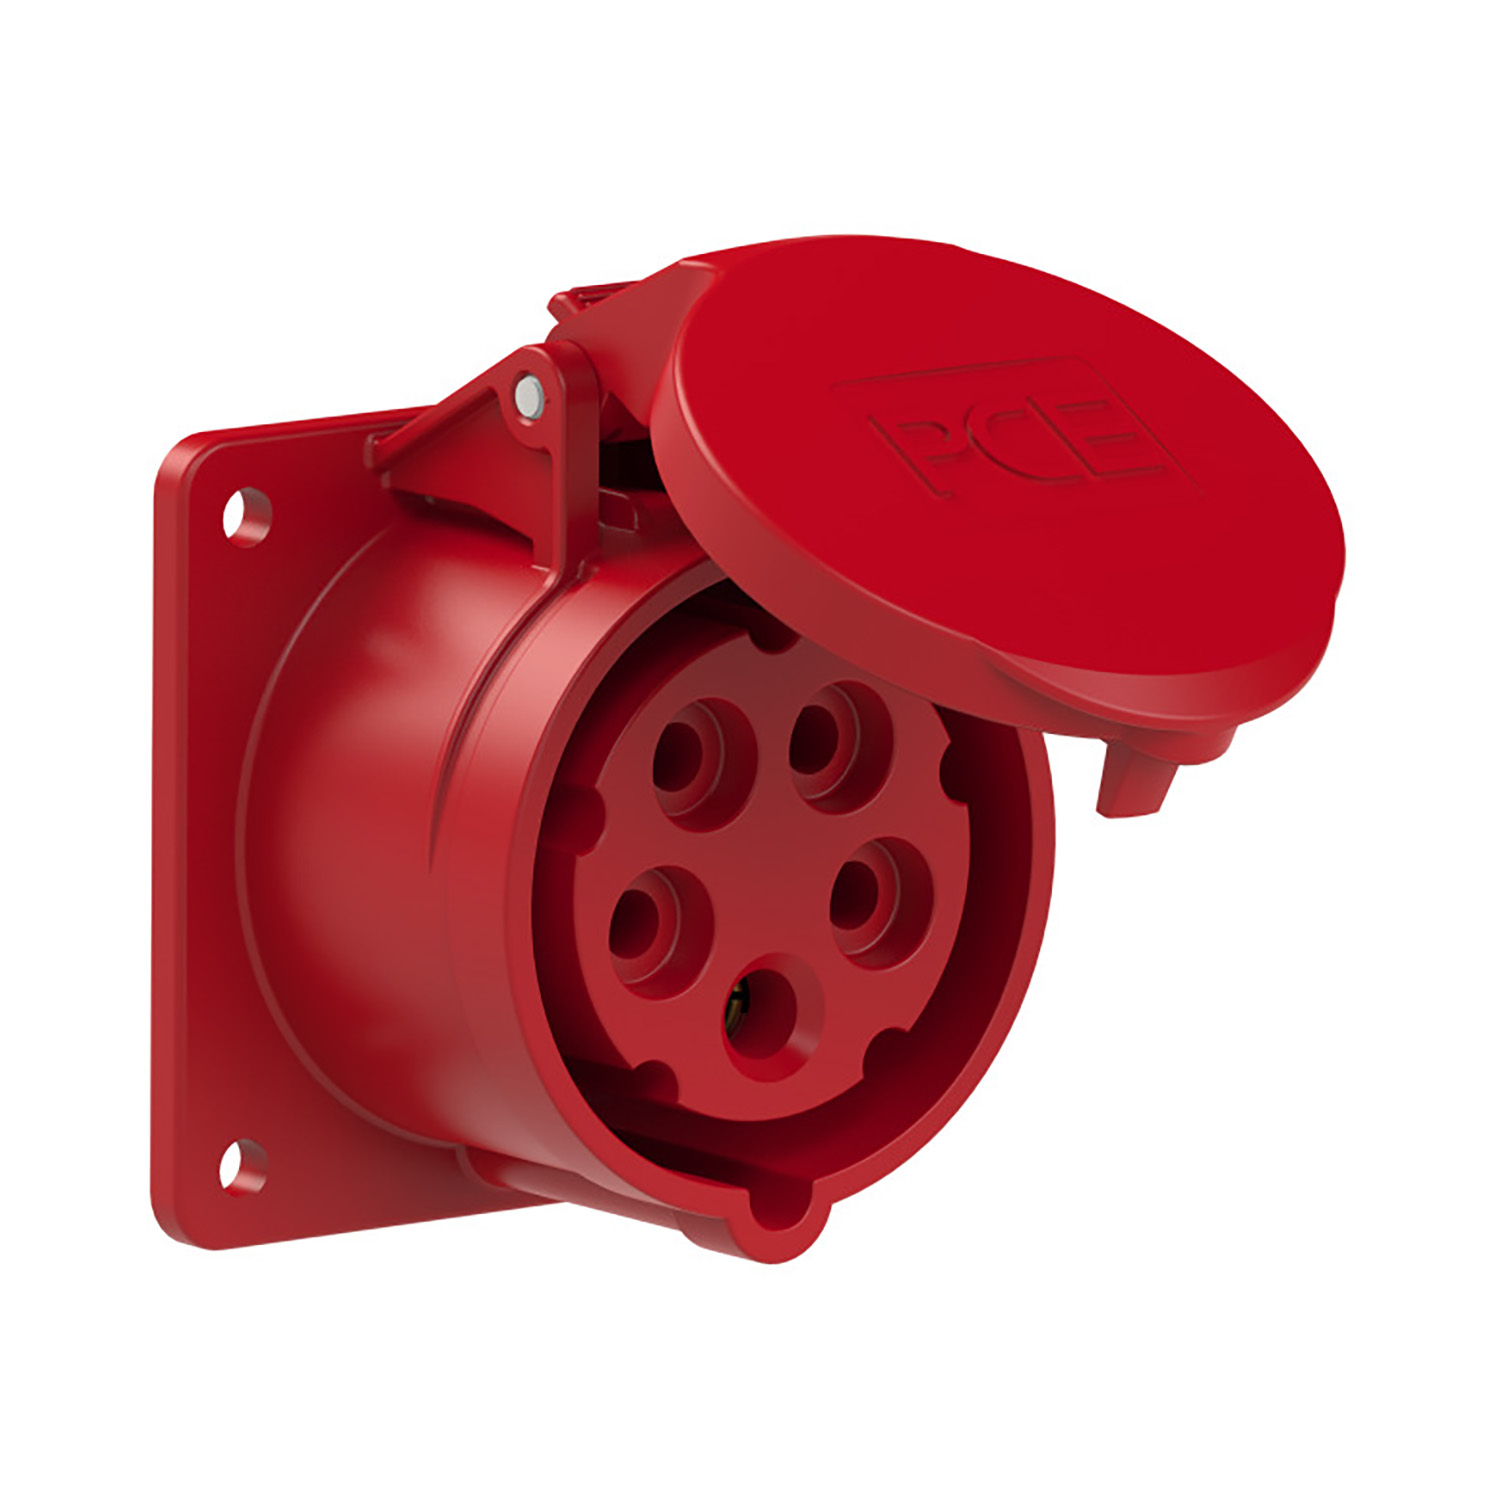 103012 CEE inbouw wcd recht 16A 5p 400 V 6h rood IP54 flens 75x75mm steek 60x60mm verzonken gaten